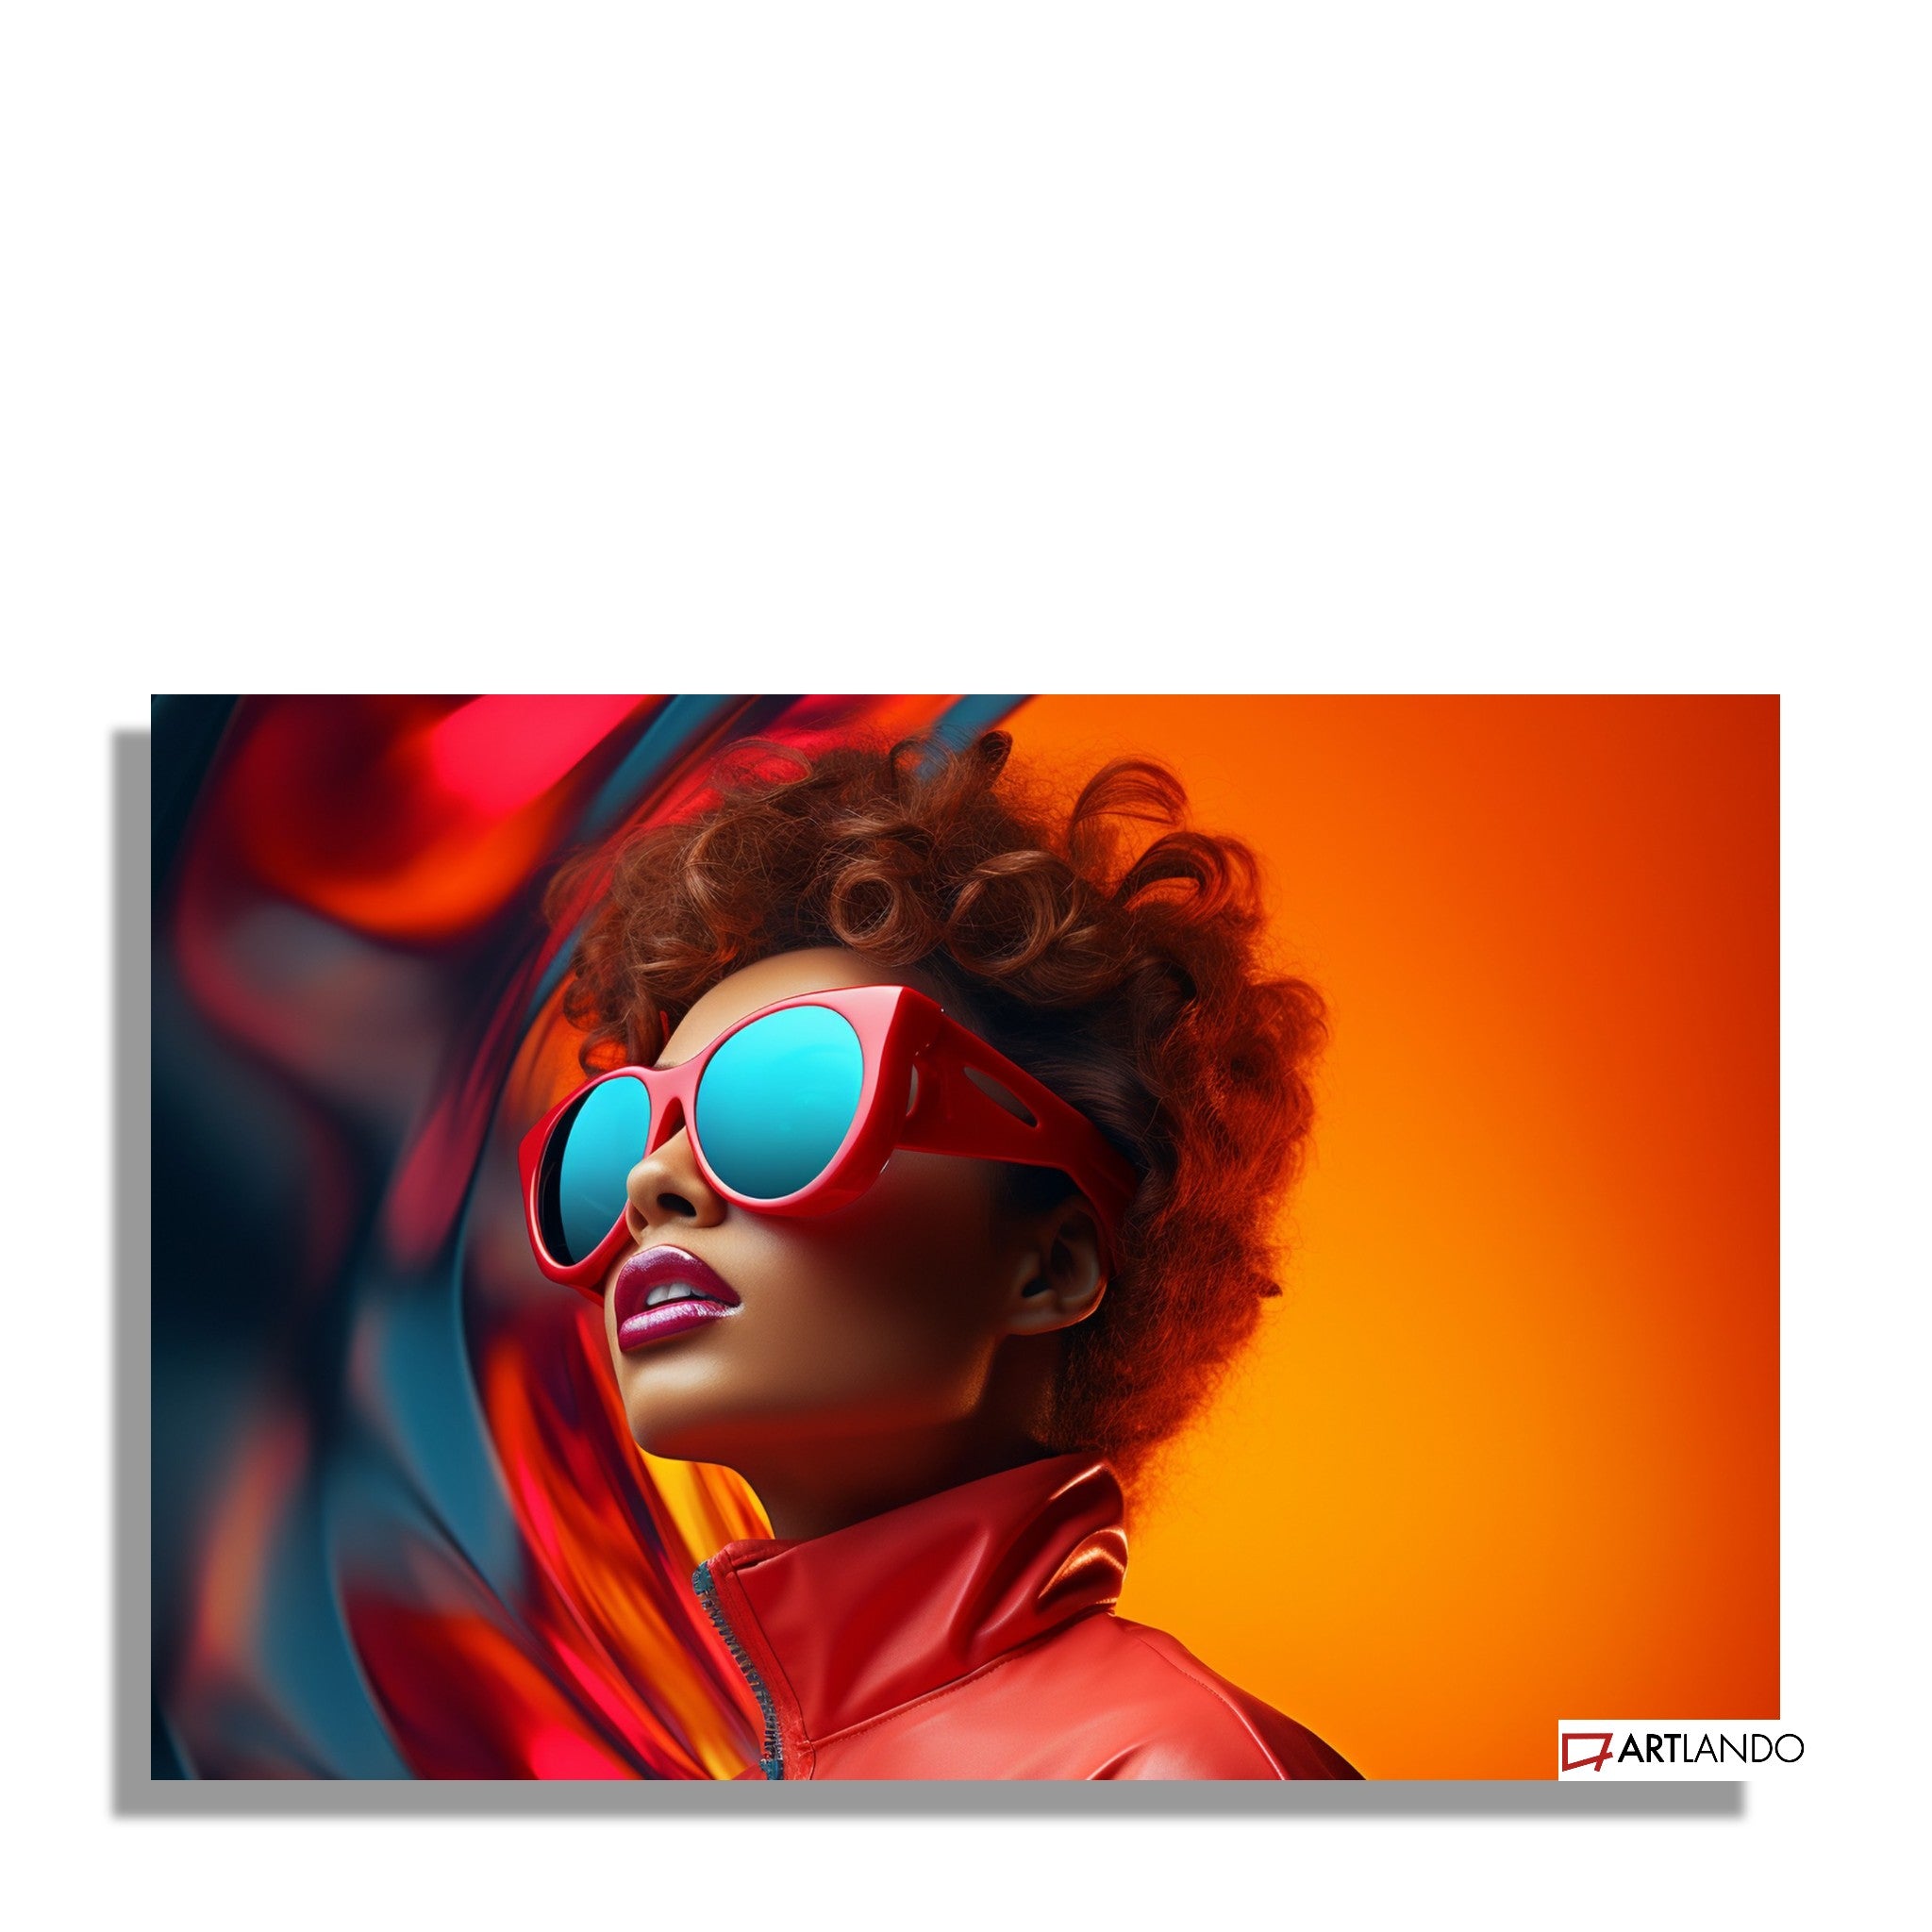 Frau mit Sonnenbrille im Retro Stil vor buntem Hintergrund - Portrait Art